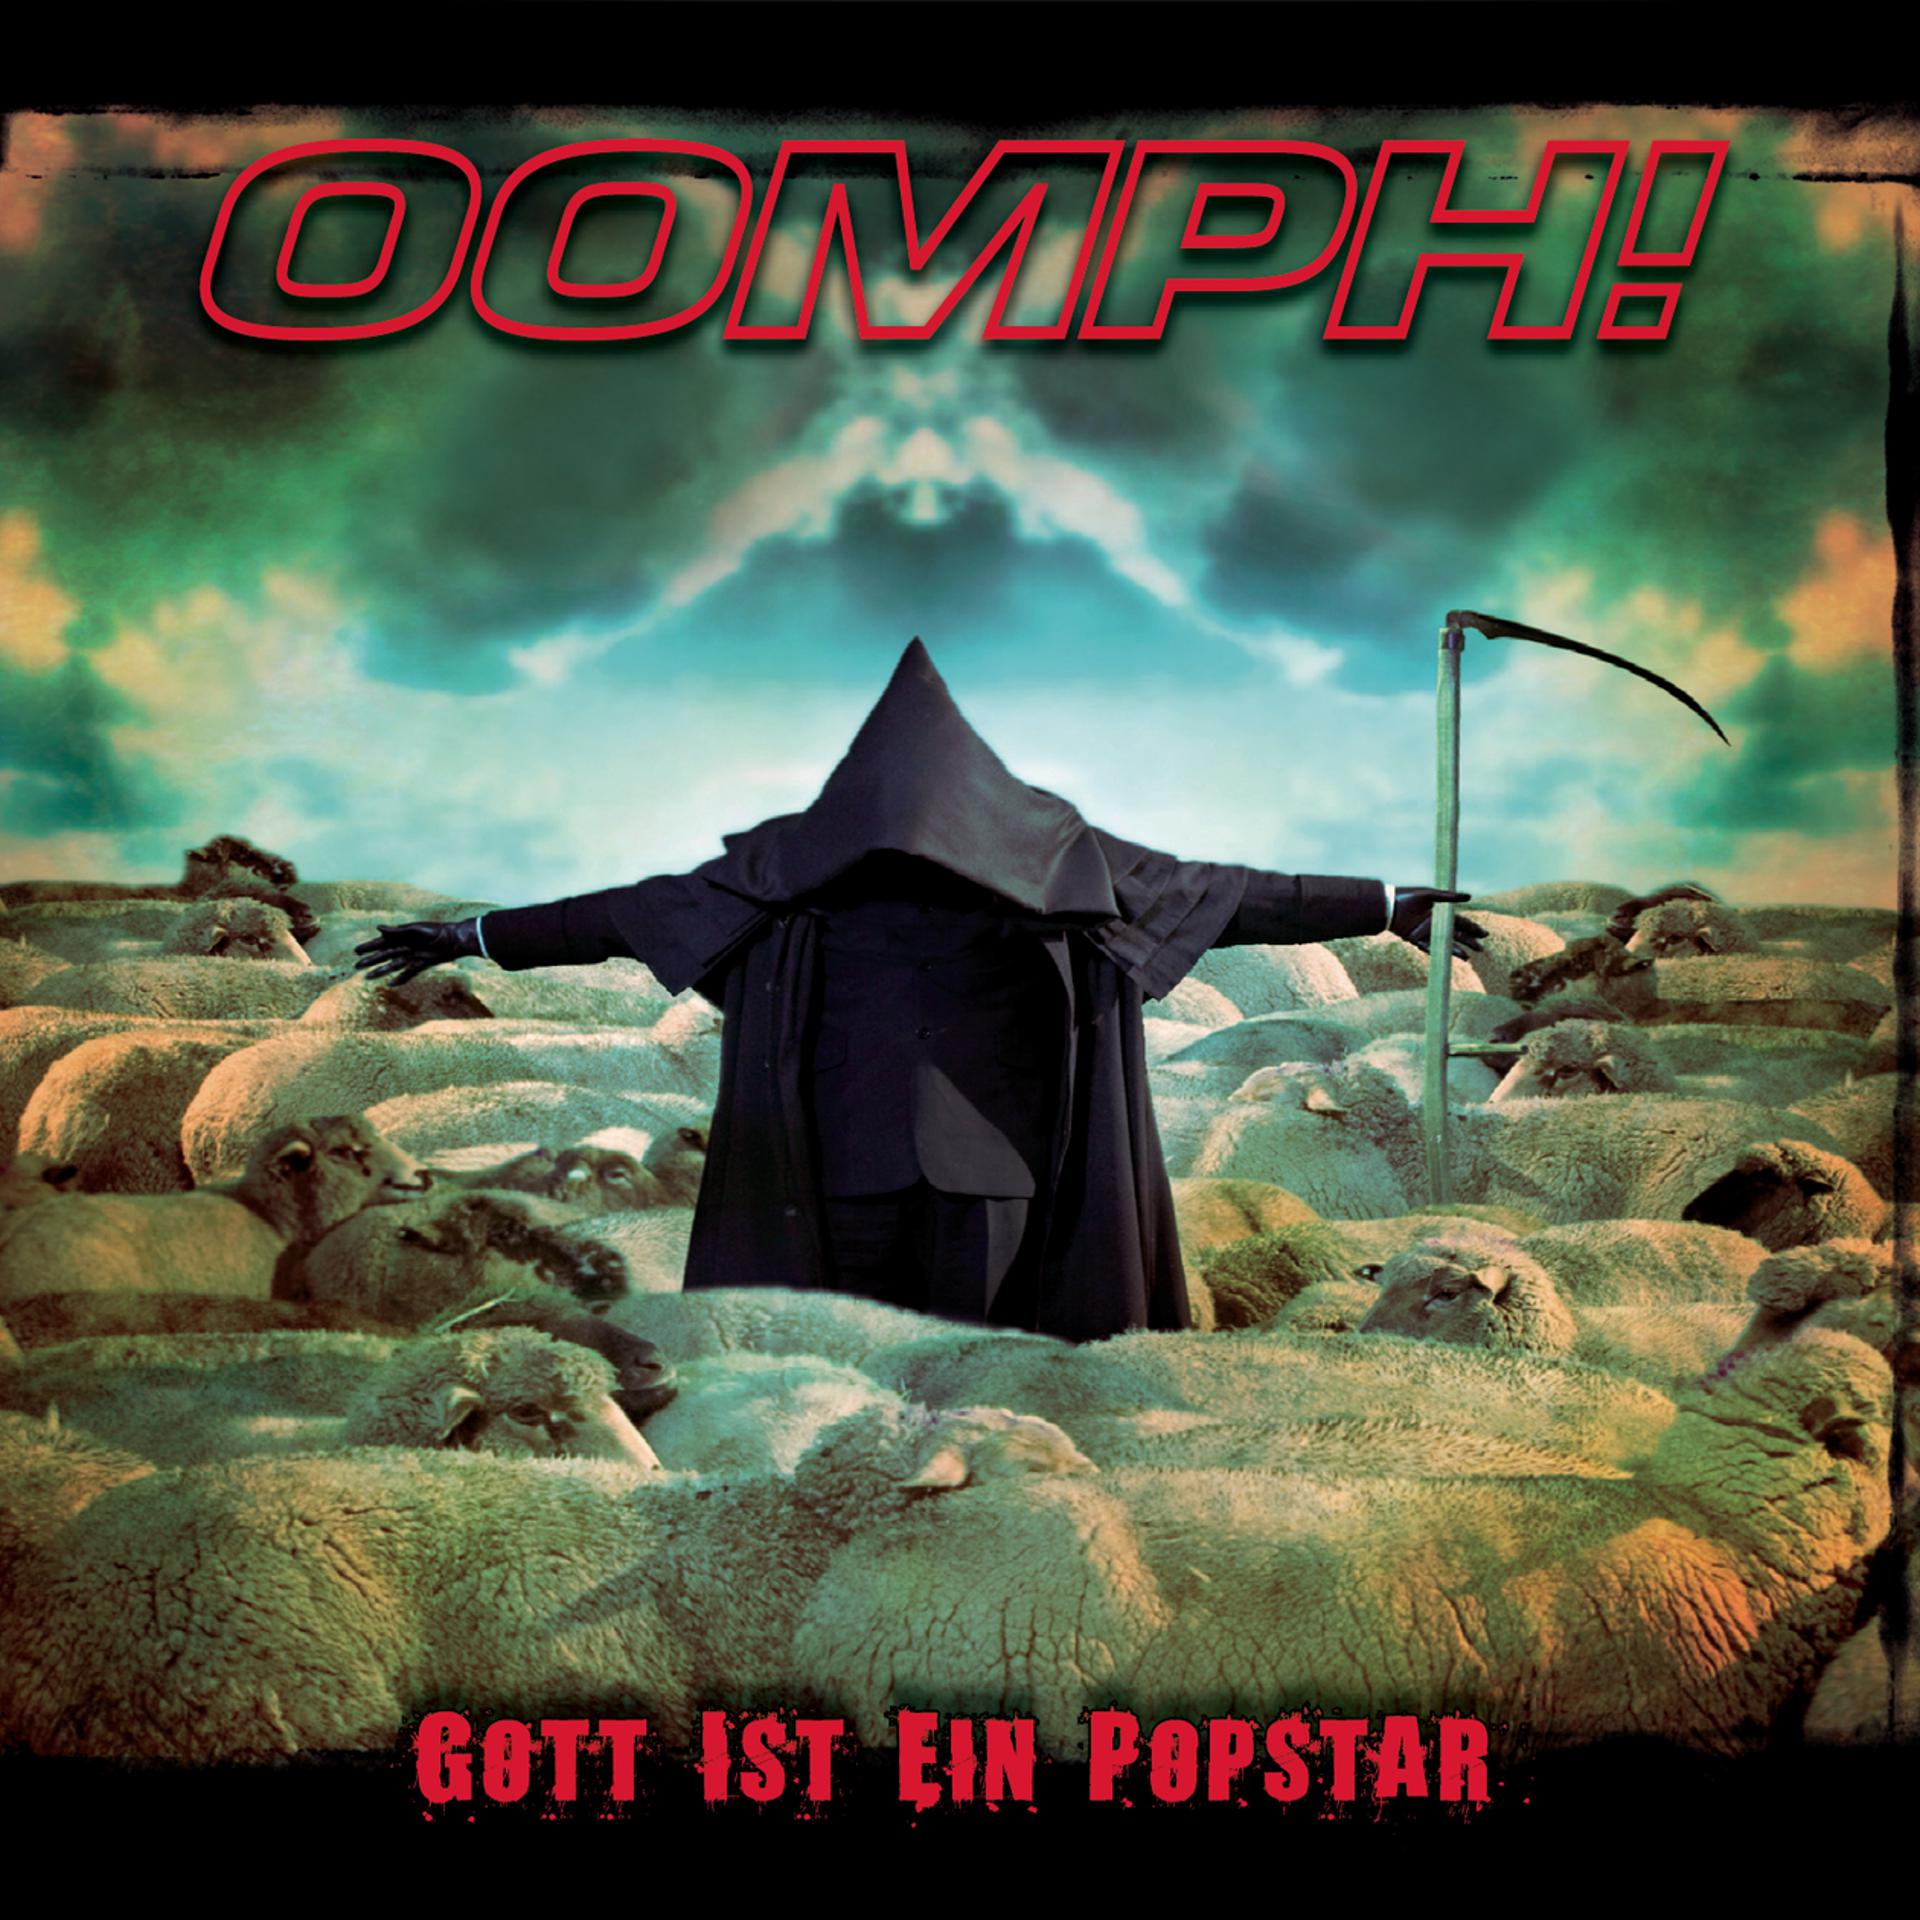 Gott ist. Oomph обложки альбомов. Обложка альбома Gott ist tot. Oomph Gott ist ein Popstar кадры. Oomph des Wahnsinns fette Beute обложка альбома.